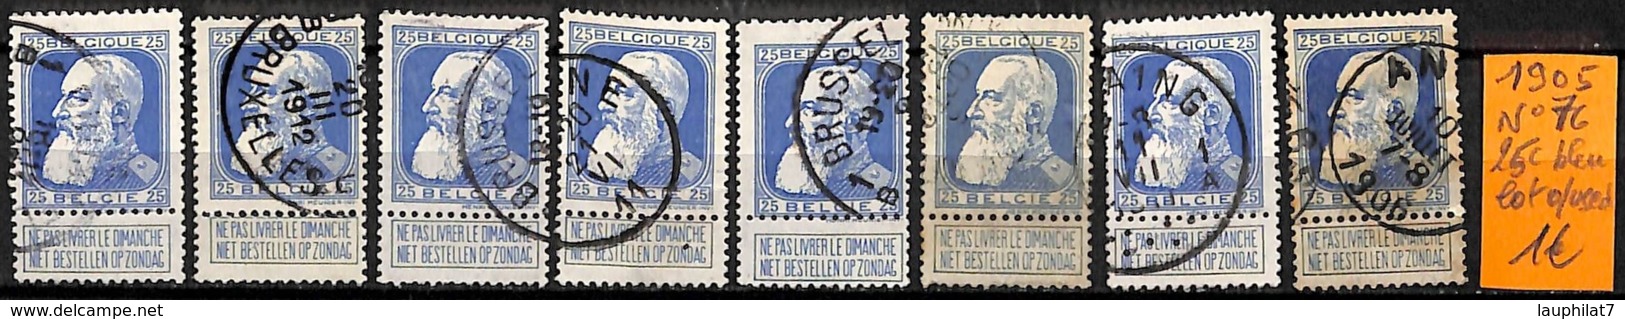 [834924]B/TB//O/Used-Belgique 1905 - N° 76, 25c Bleu, Lot Obl/USED, Familles Royales, Rois - 1905 Grosse Barbe